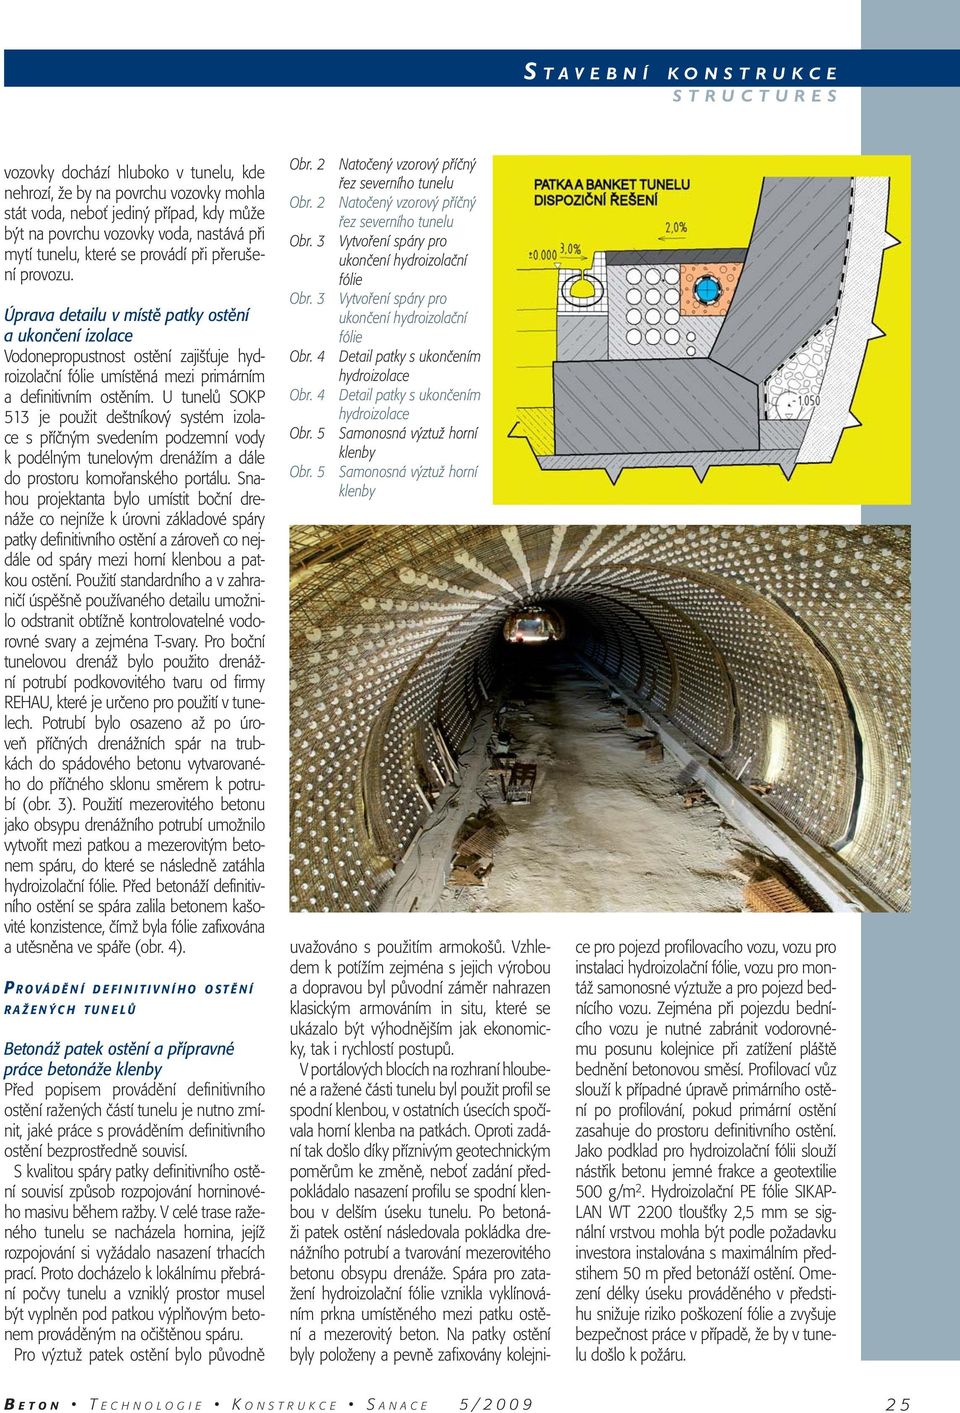 U tunelů SOKP 513 je použit deštníkový systém izolace s příčným svedením podzemní vody k podélným tunelovým drenážím a dále do prostoru komořanského portálu.